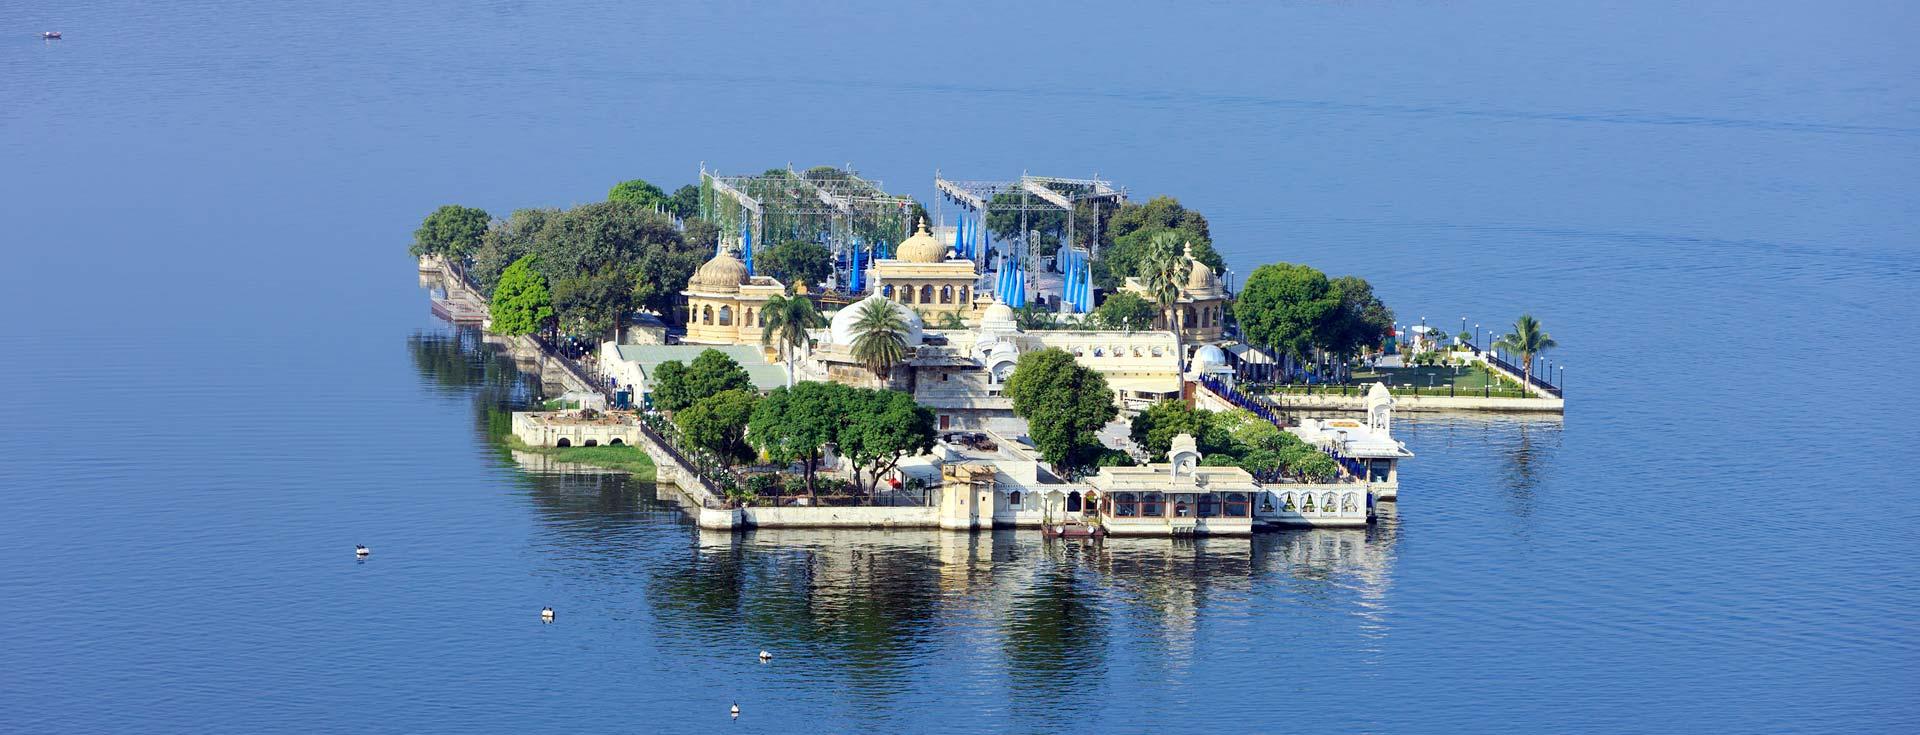 Exploring Udaipur's Island Palaces Jag Mandir and Lake Palace | BLOG